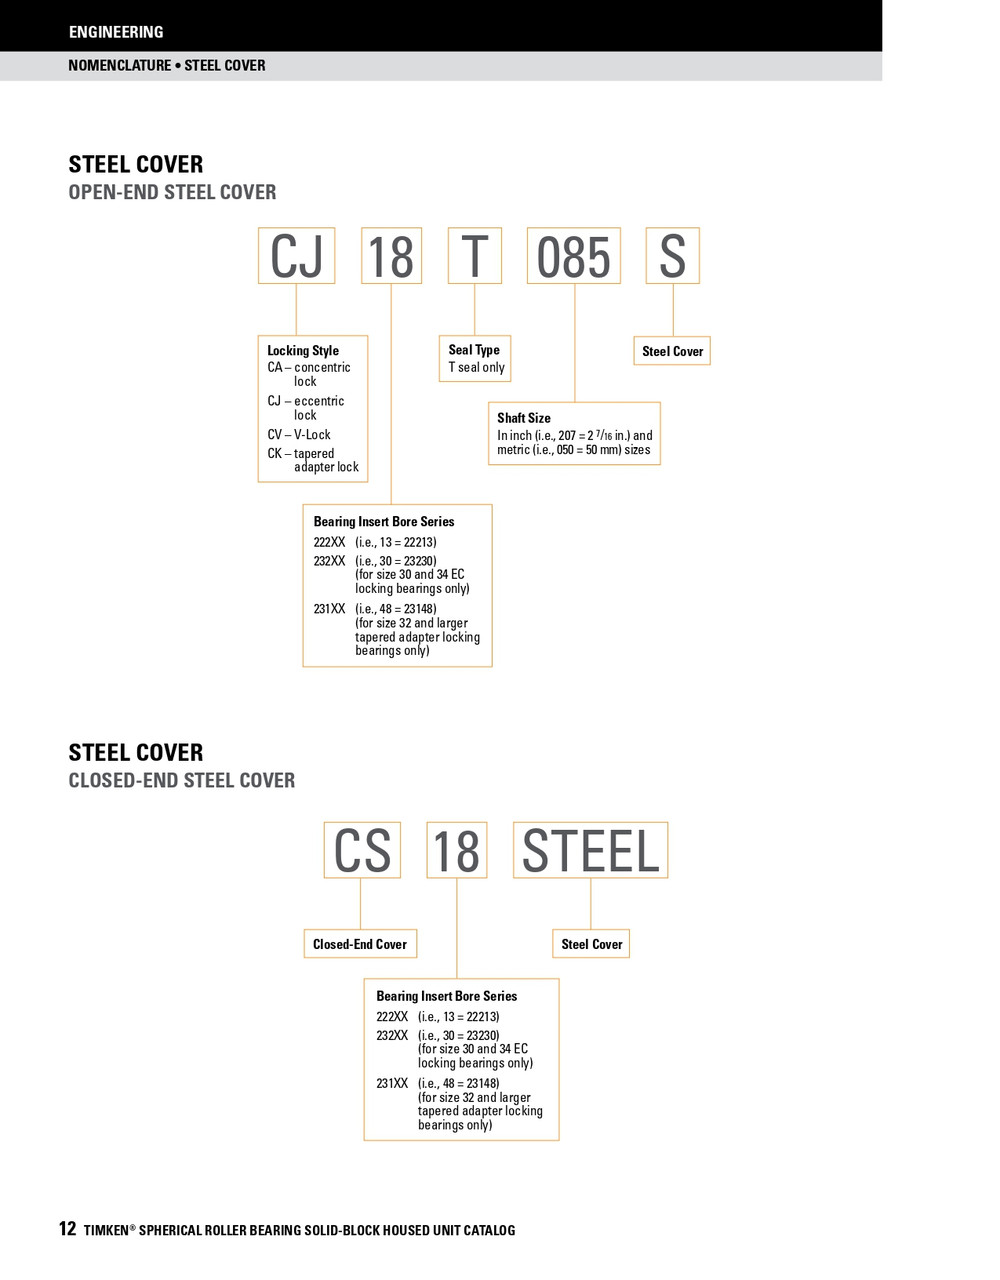 15" Timken SRB Steel Open End Cover w/Teflon Seal - TA/DV Taper Lock Bushing Type  CK80T1500S